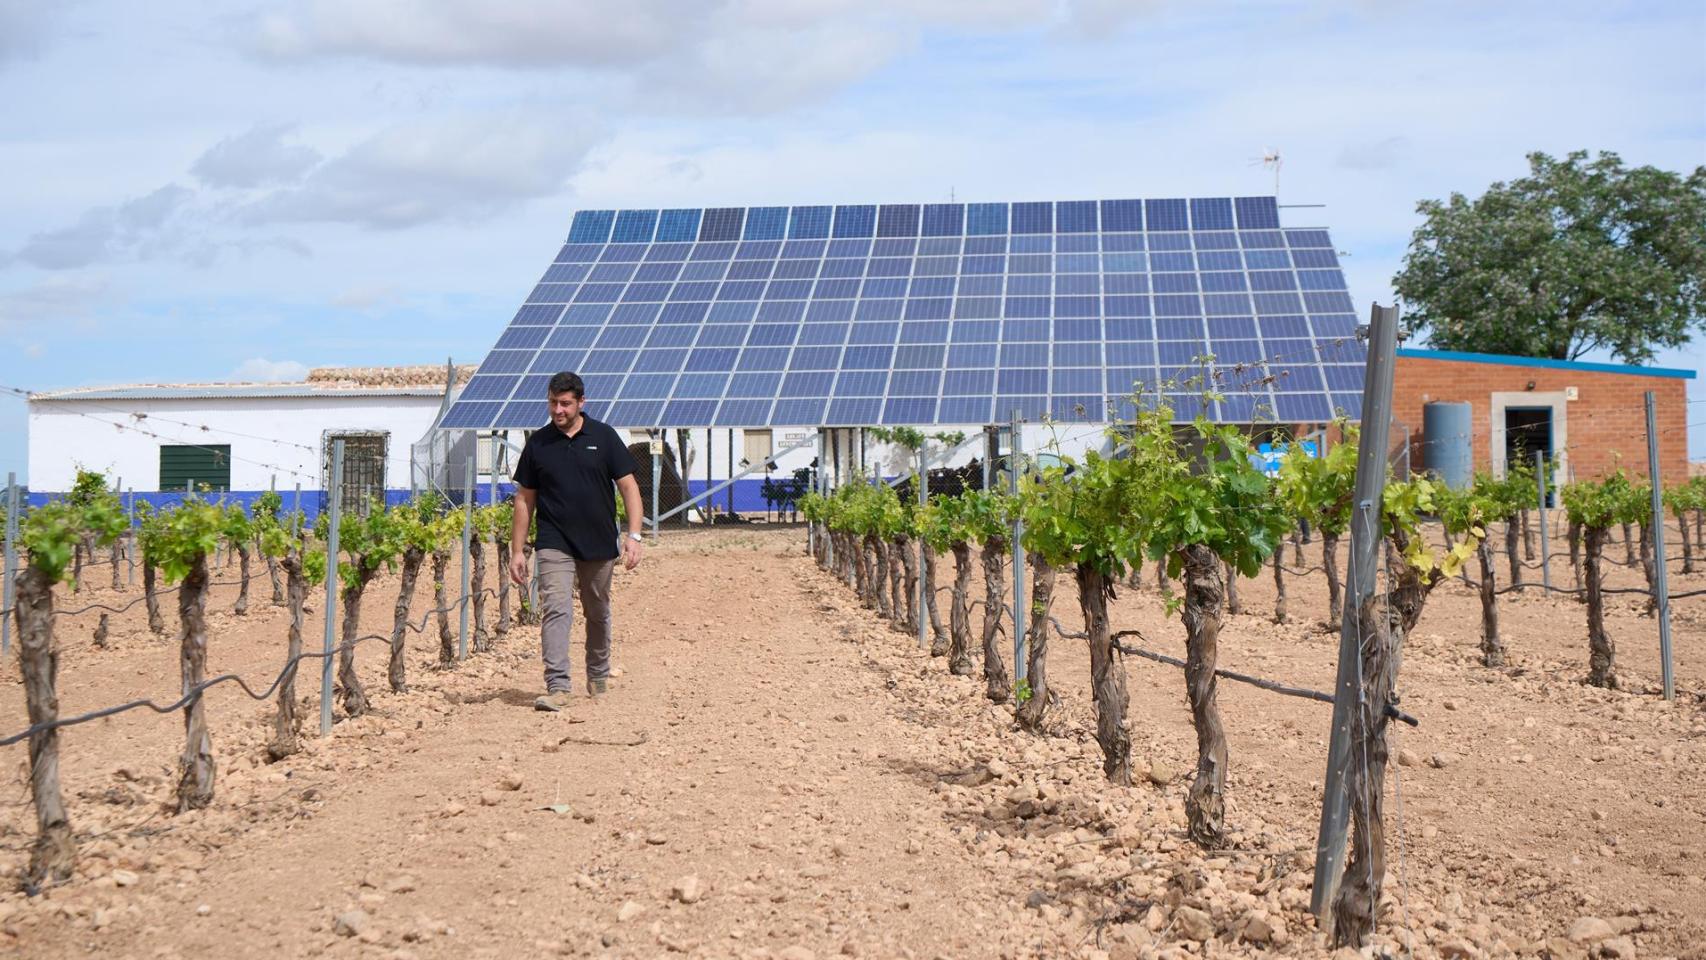 Bombeo Solar: El Futuro de la Agricultura con Placas Solares